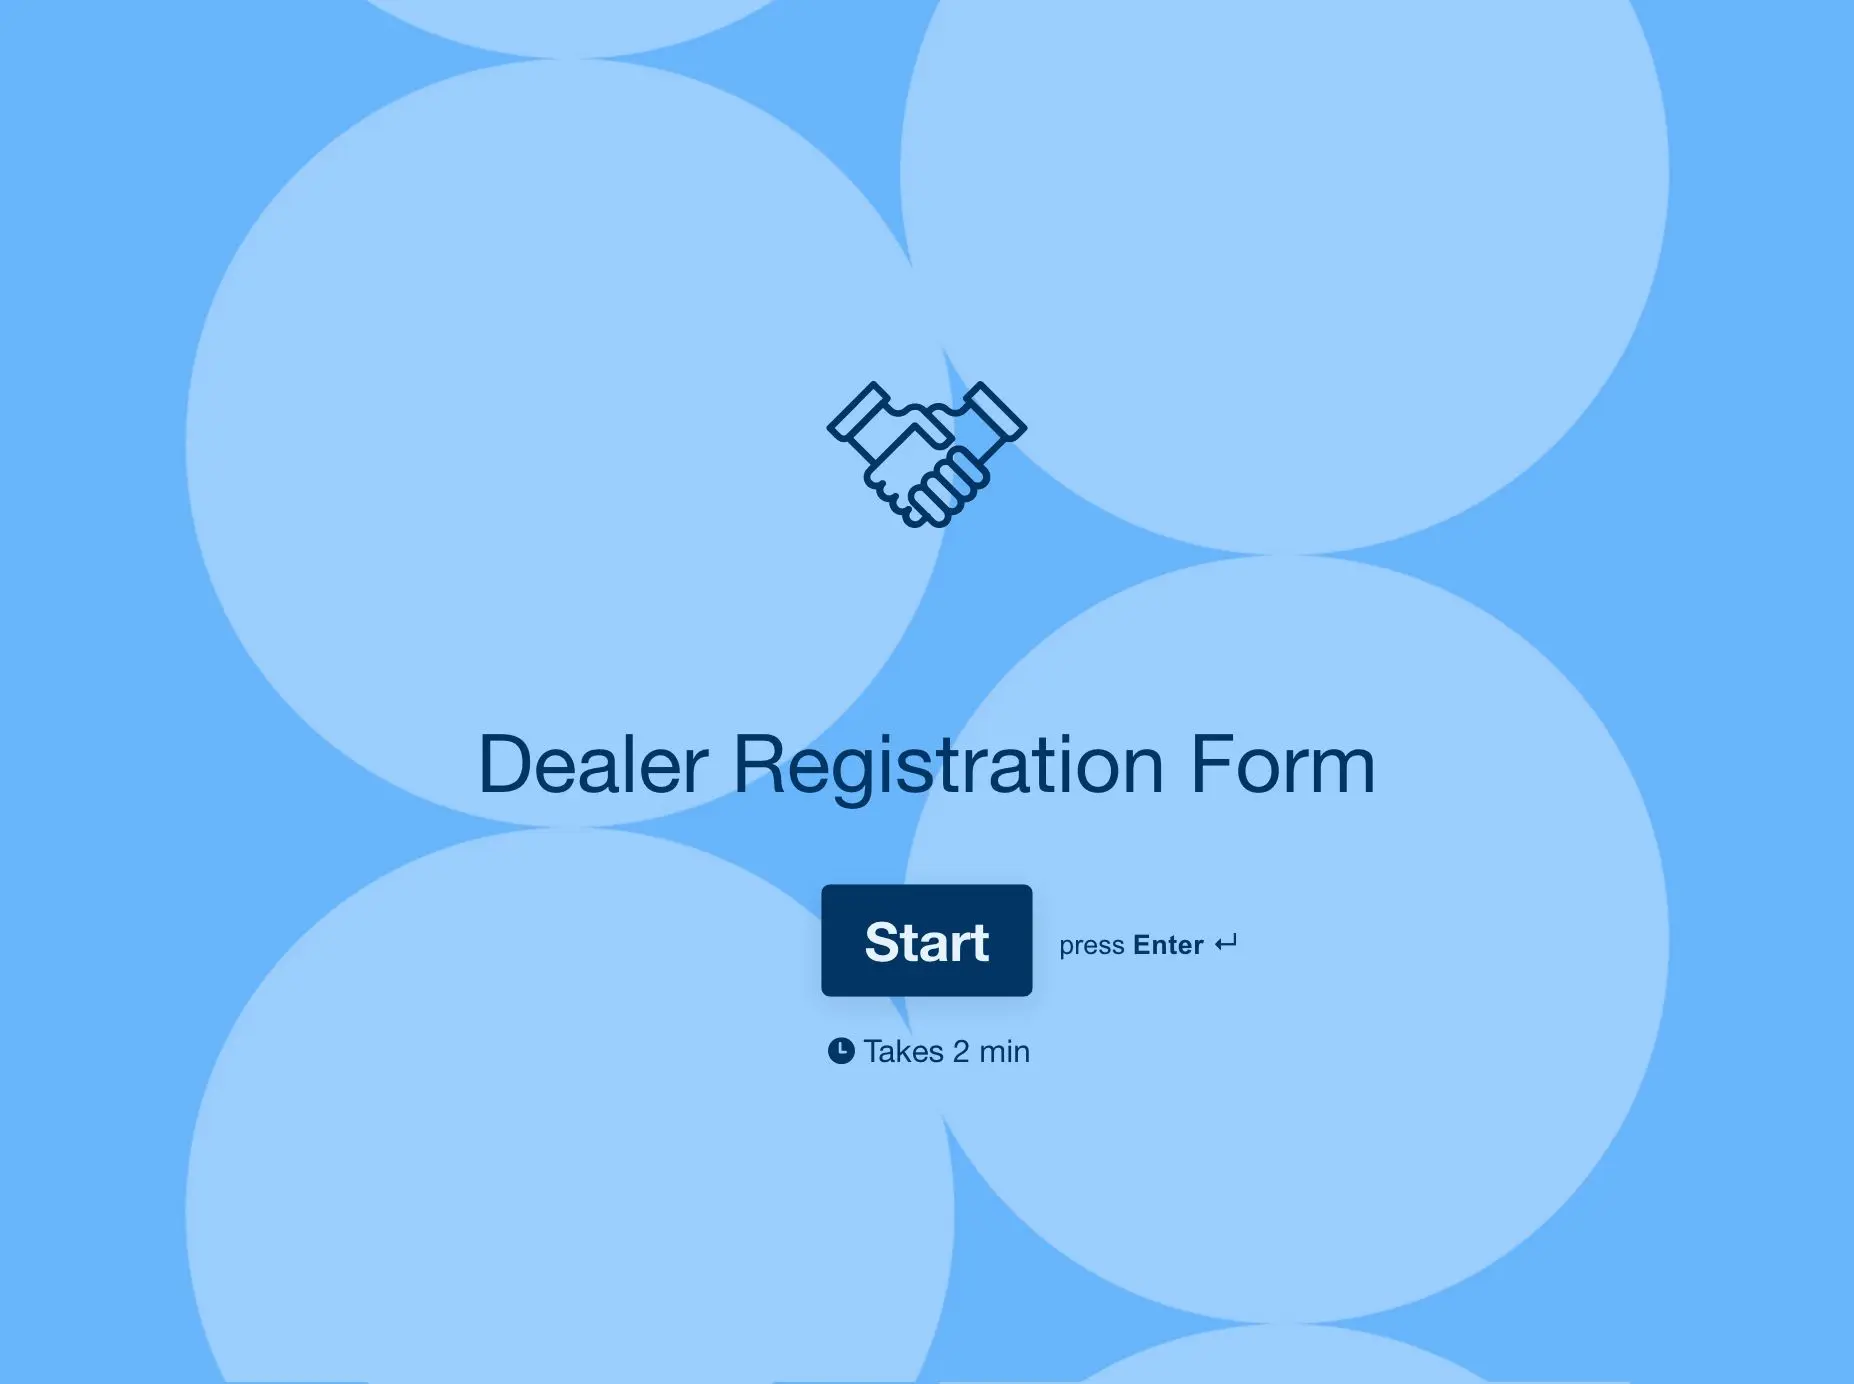 Dealer Registration Form Template Hero